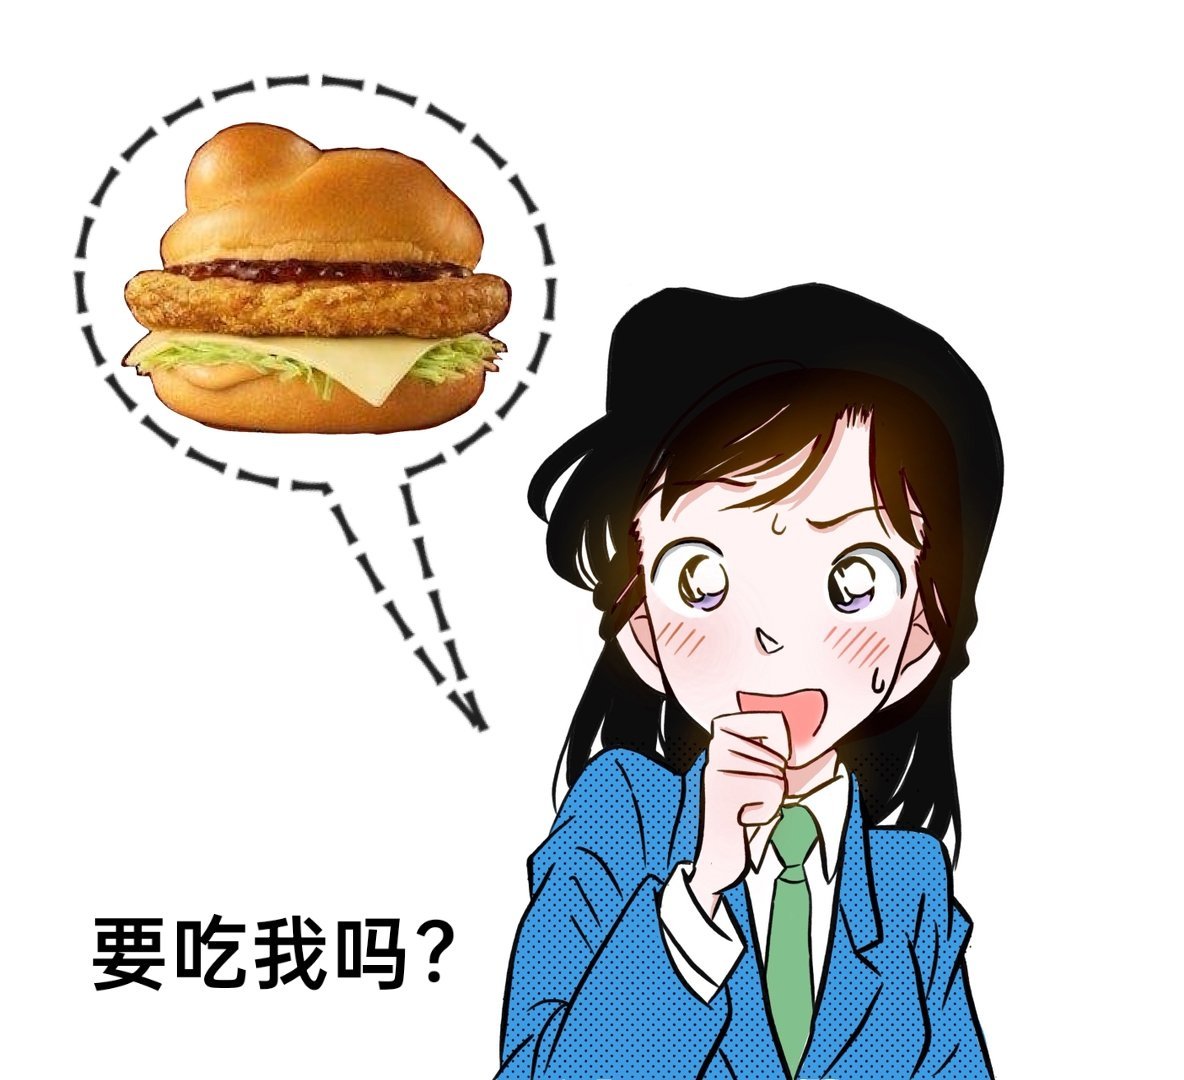 难绷！日本麦当劳x名侦探柯南联动汉堡甚至致敬了小兰的发型！